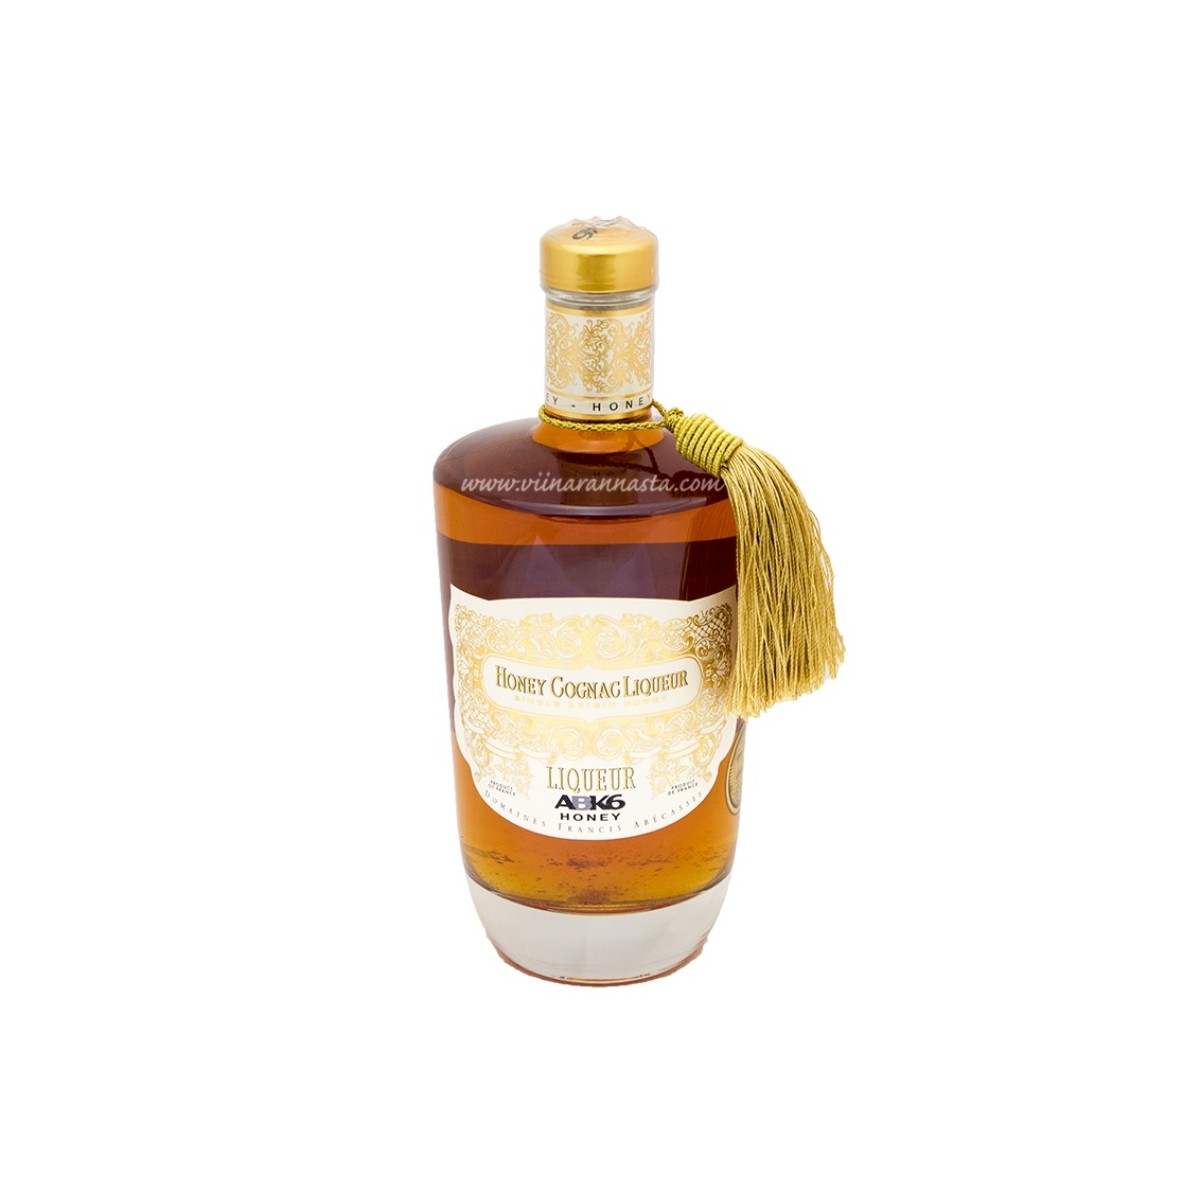 ABK6 Honey Cognac Liqueur 35% 70cl